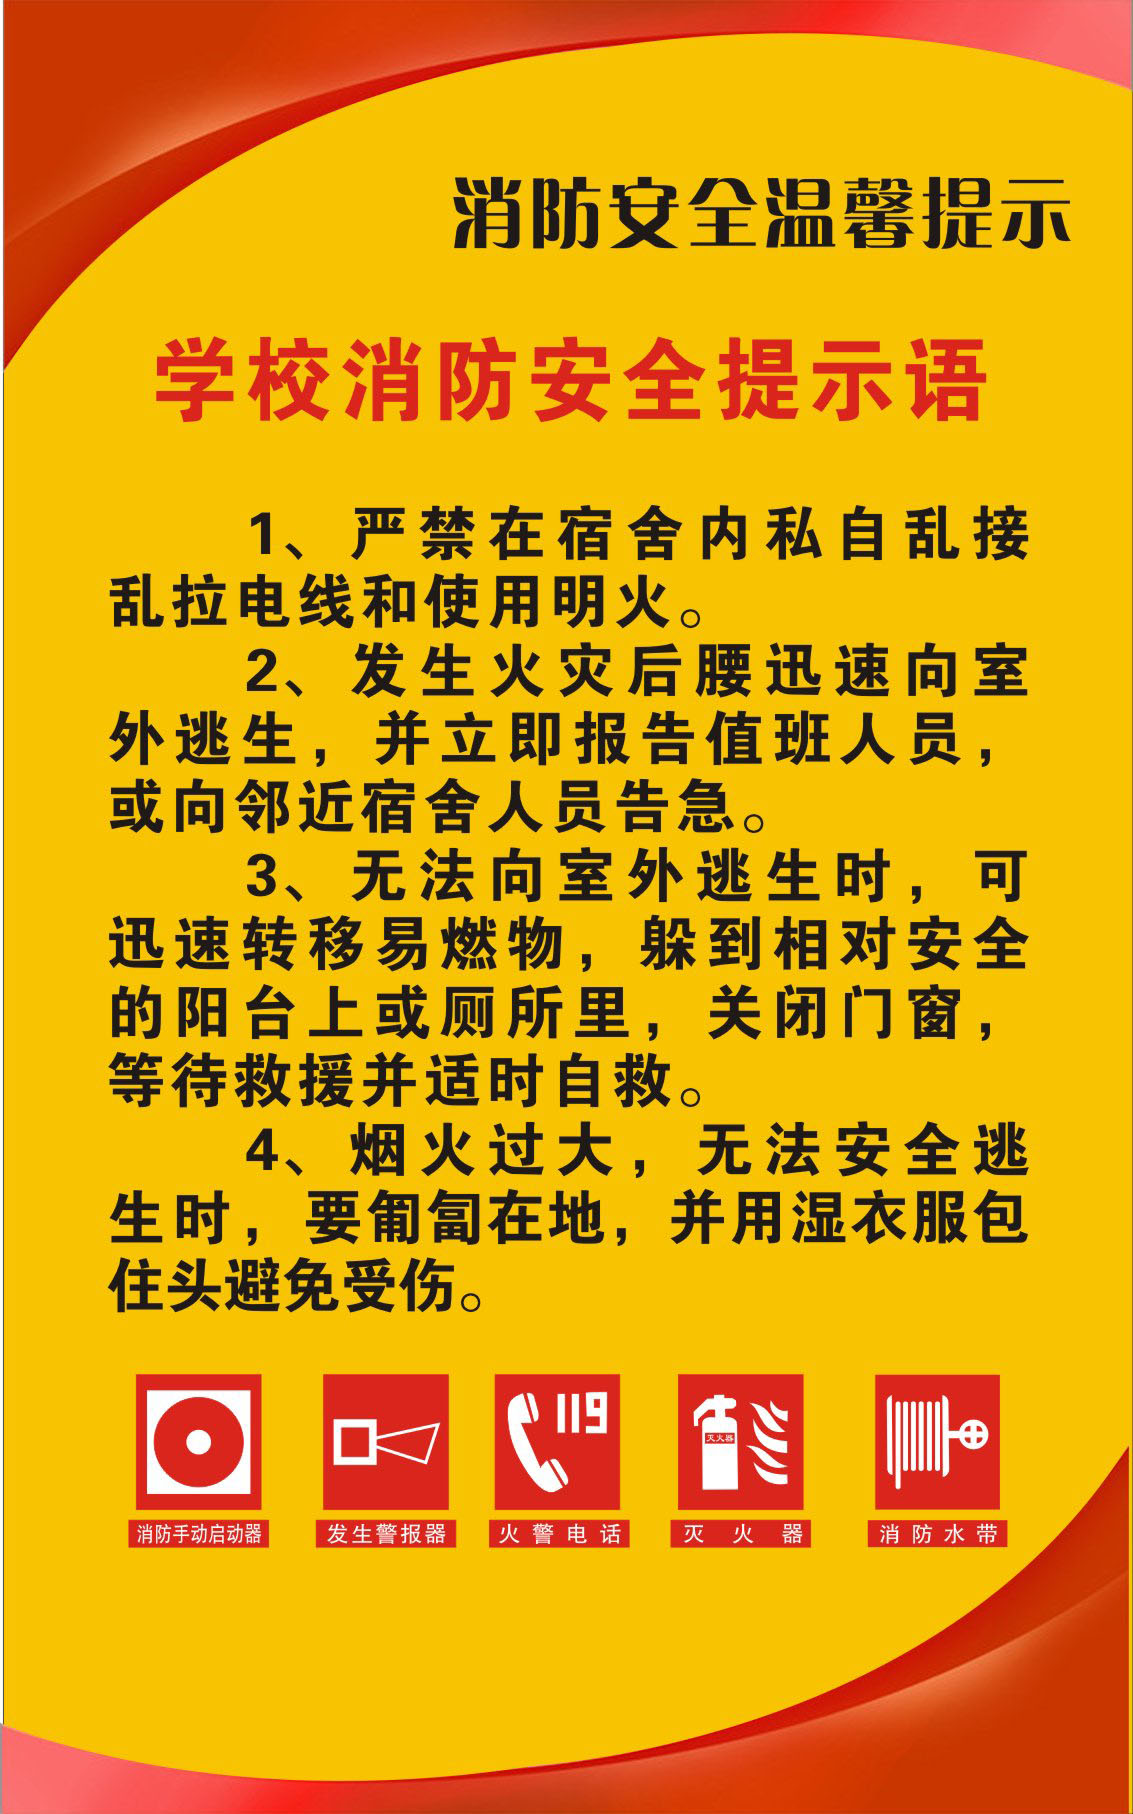 731贴纸海报展板素材652校园文化文明标识2学校消防安全提示语